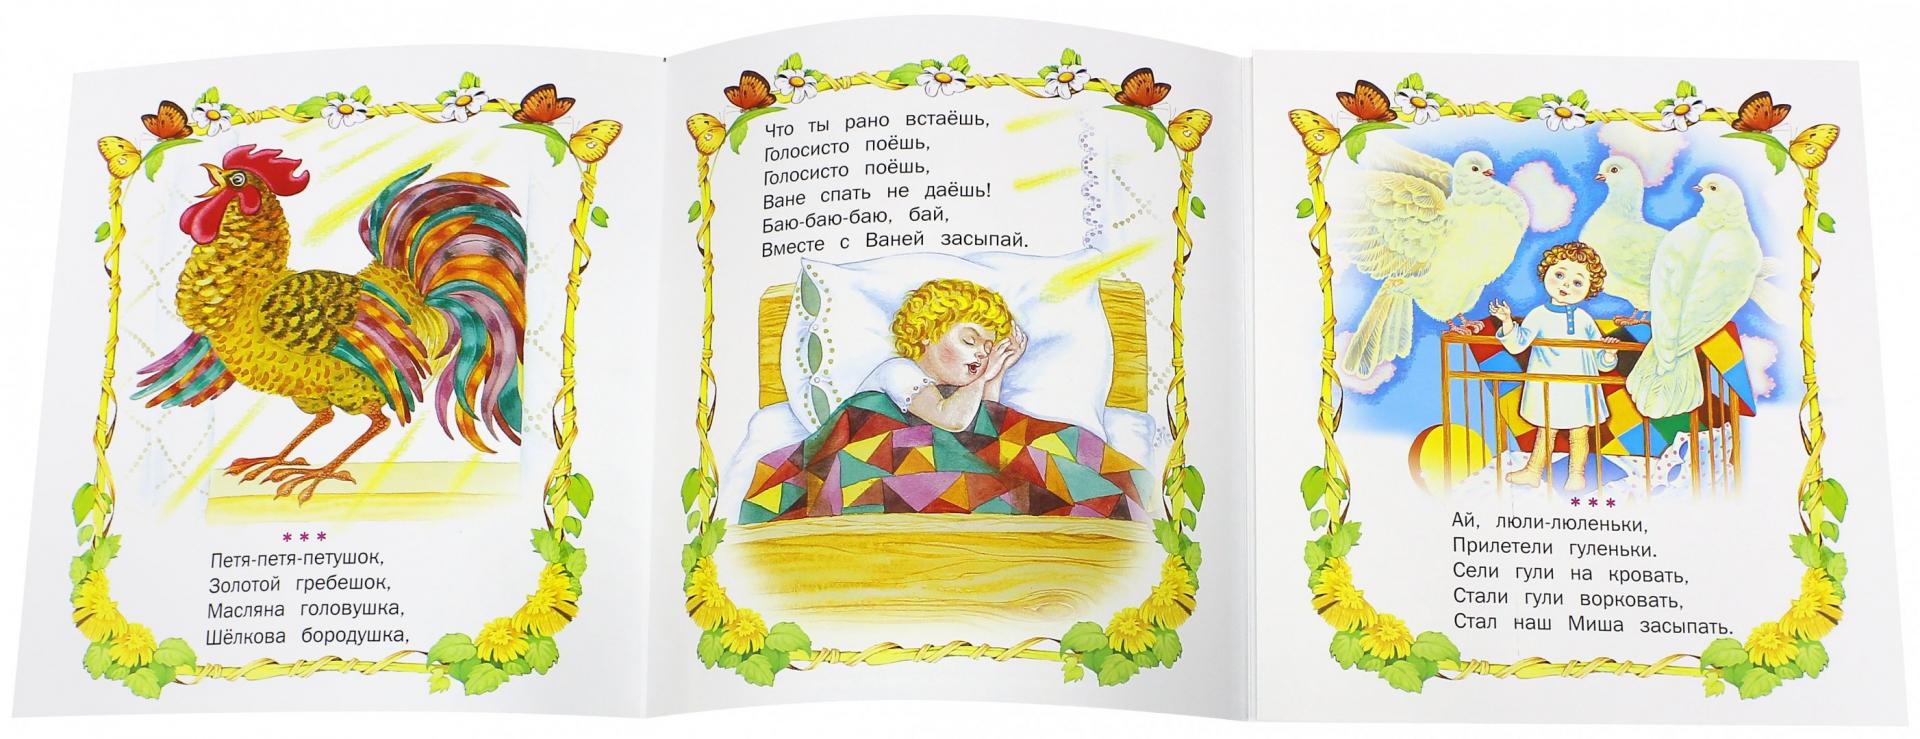 Иллюстрация 1 из 14 для Потешки - М. Булатов | Лабиринт - книги. Источник: Лабиринт